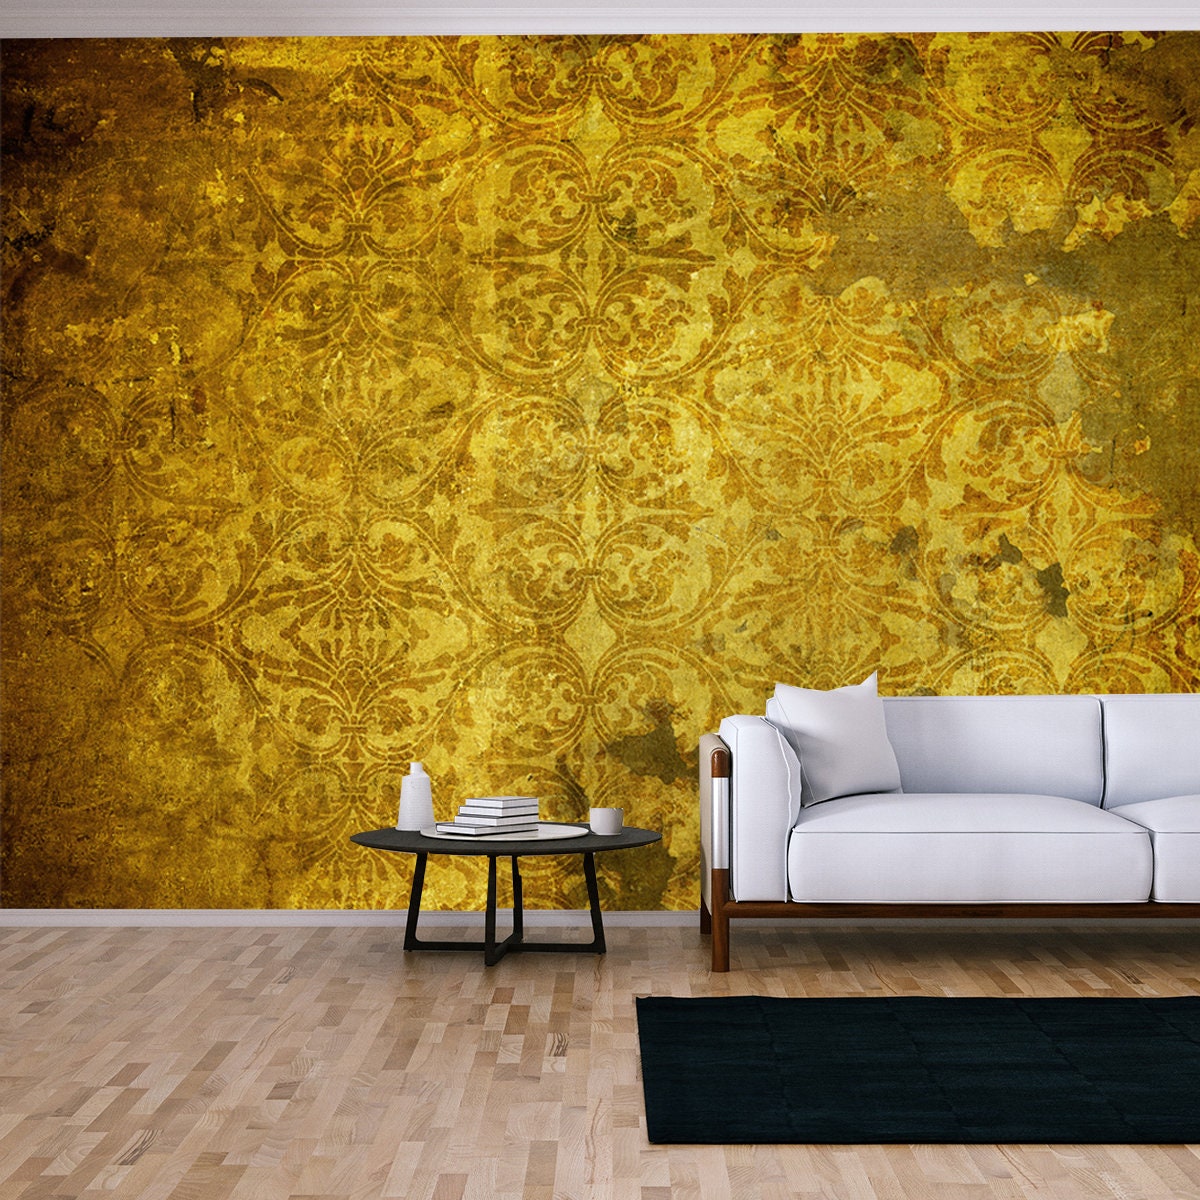 Grunge Vintage Gold Wallpaper Living Room Mural